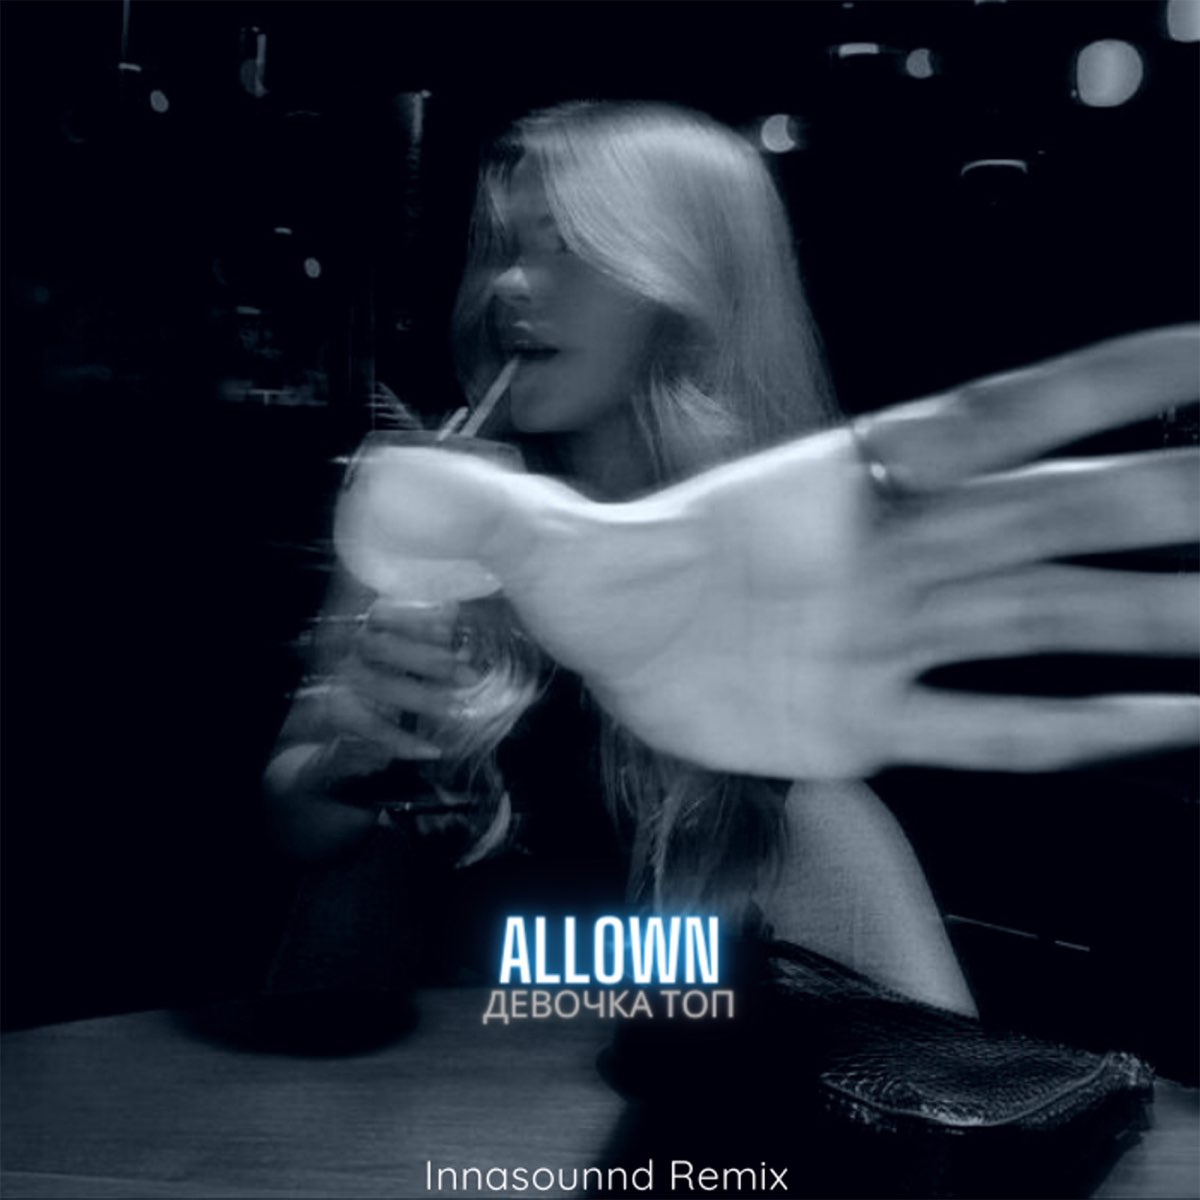 104 королева innasounnd remix. Innasounnd. Allown. Allown фото. Mekhman - копия Пиратская (innasounnd Remix).